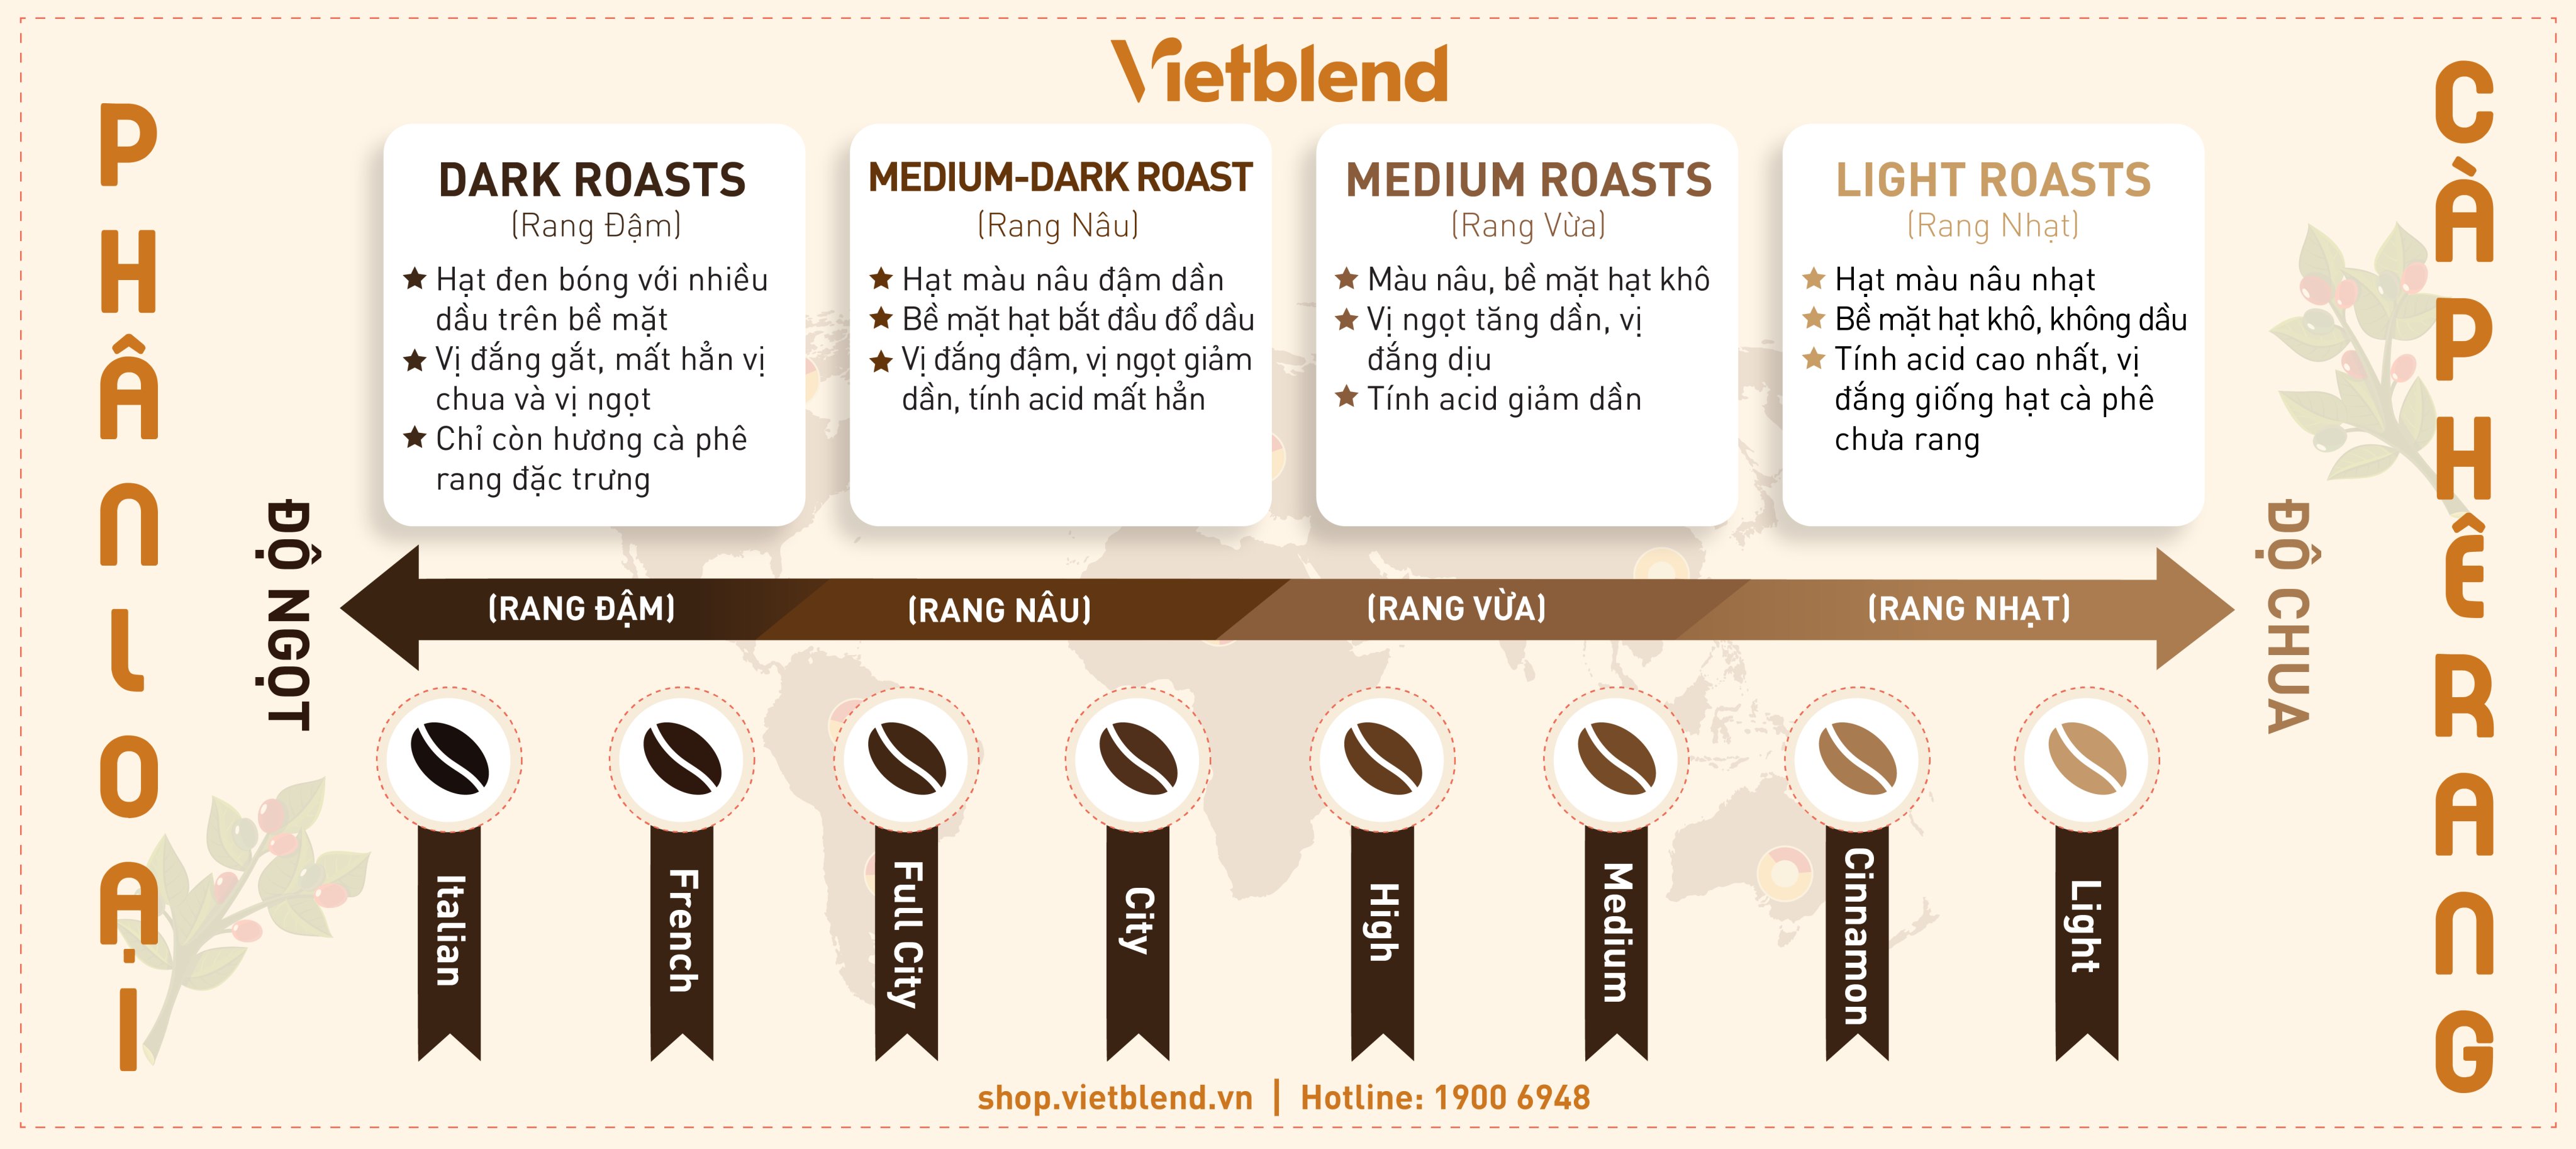 Phân loại mức độ của cà phê rang và hương vị đặc trưng - Vietblend